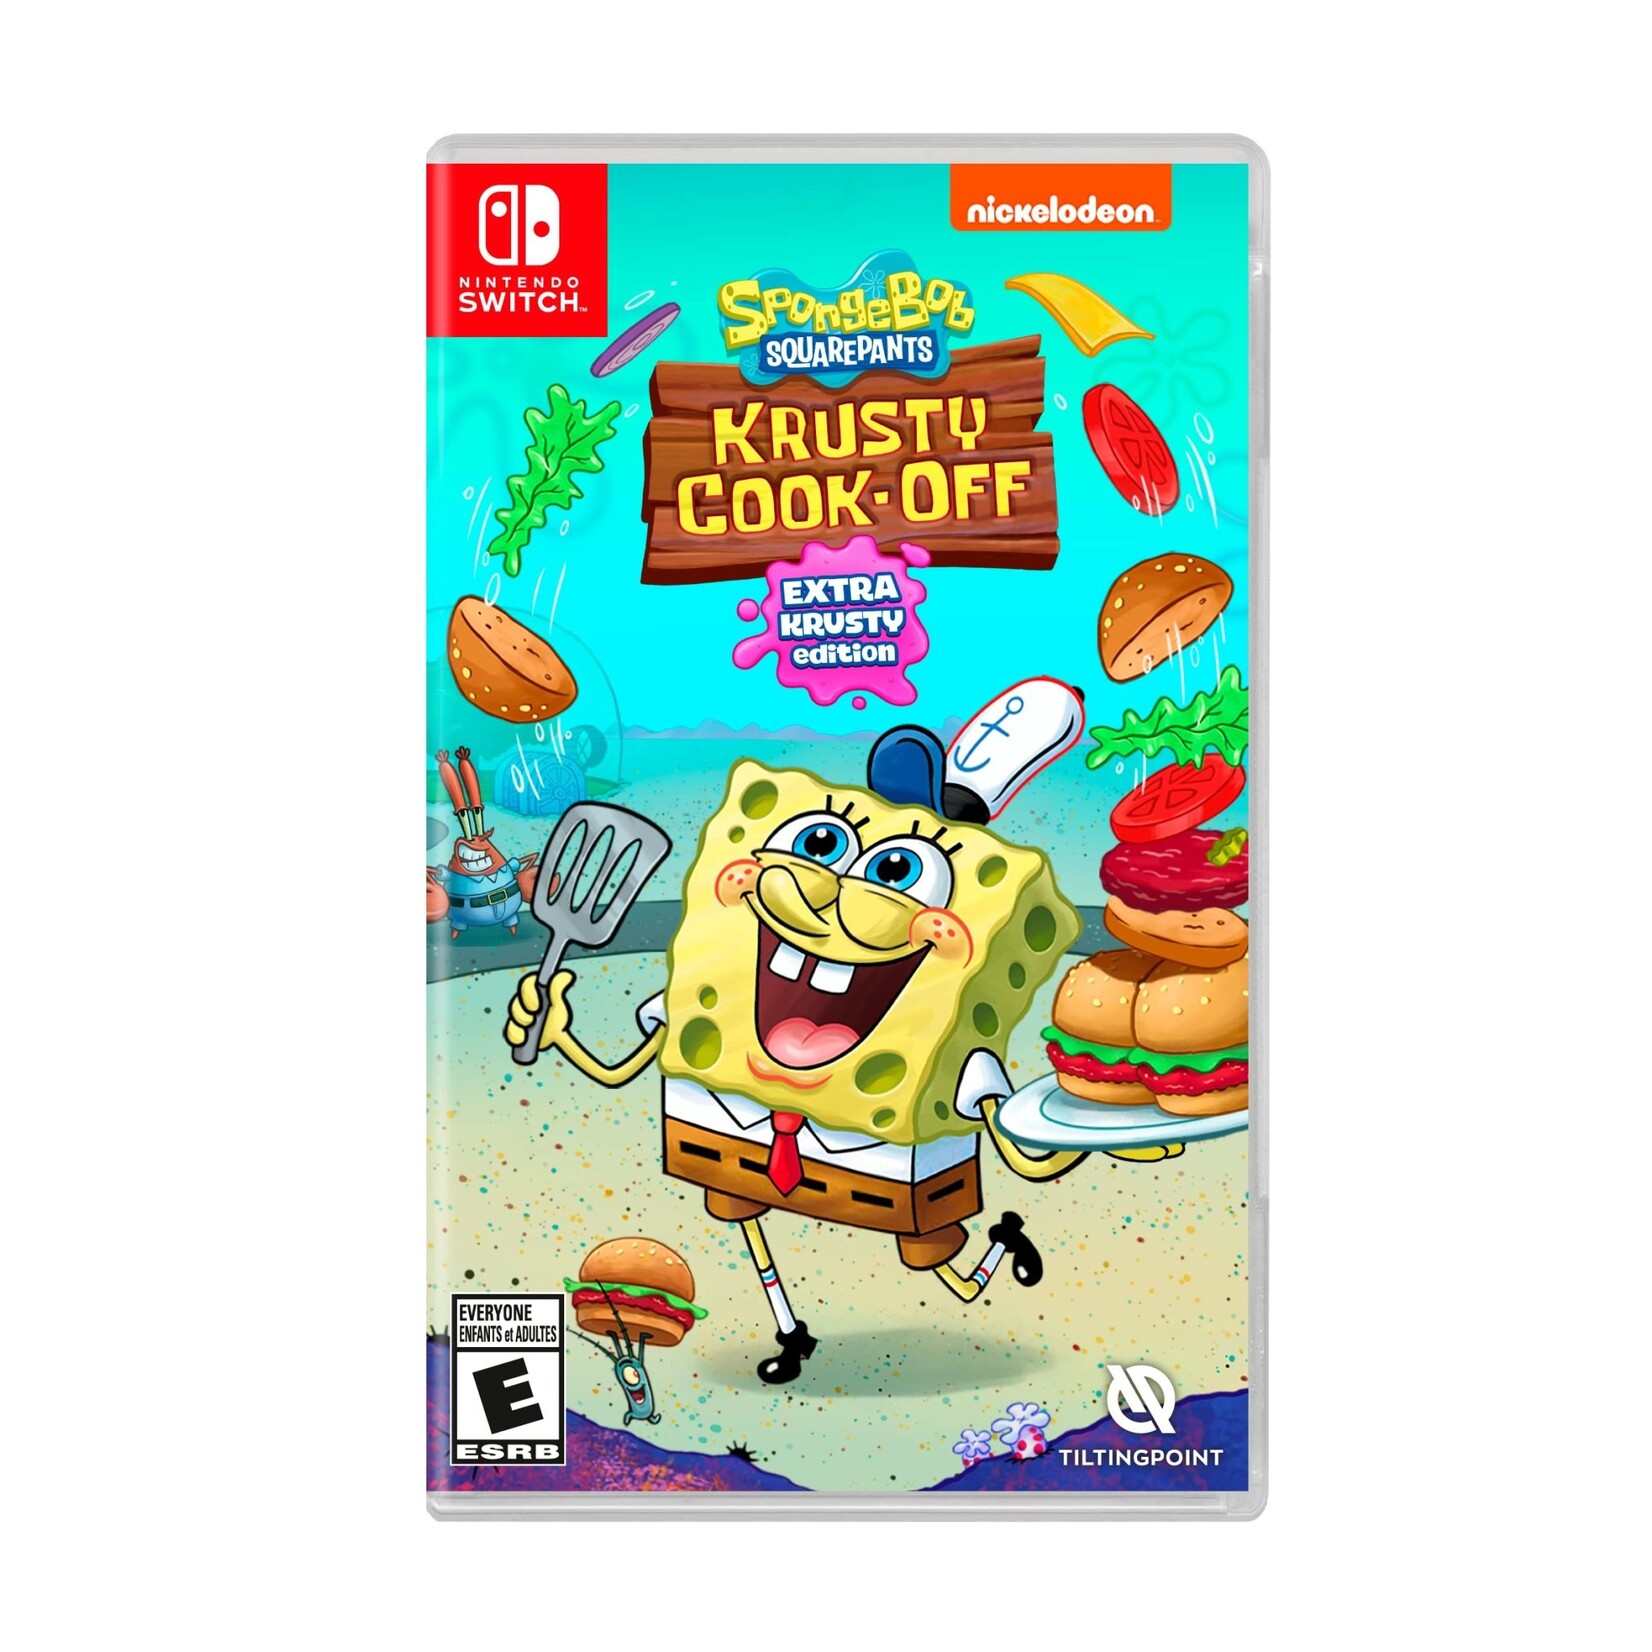 SWITCHU- Spongebob Squarepants Krusty Cook-Off